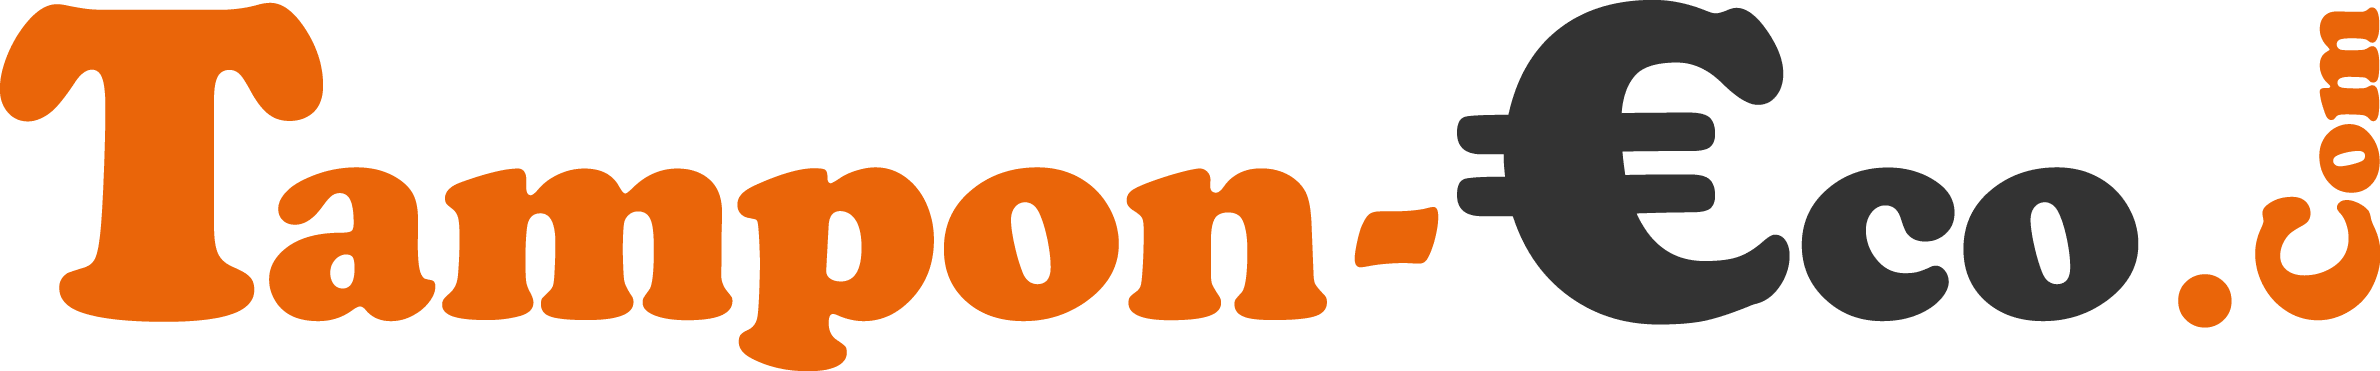 Logo www.tampon-eco.com